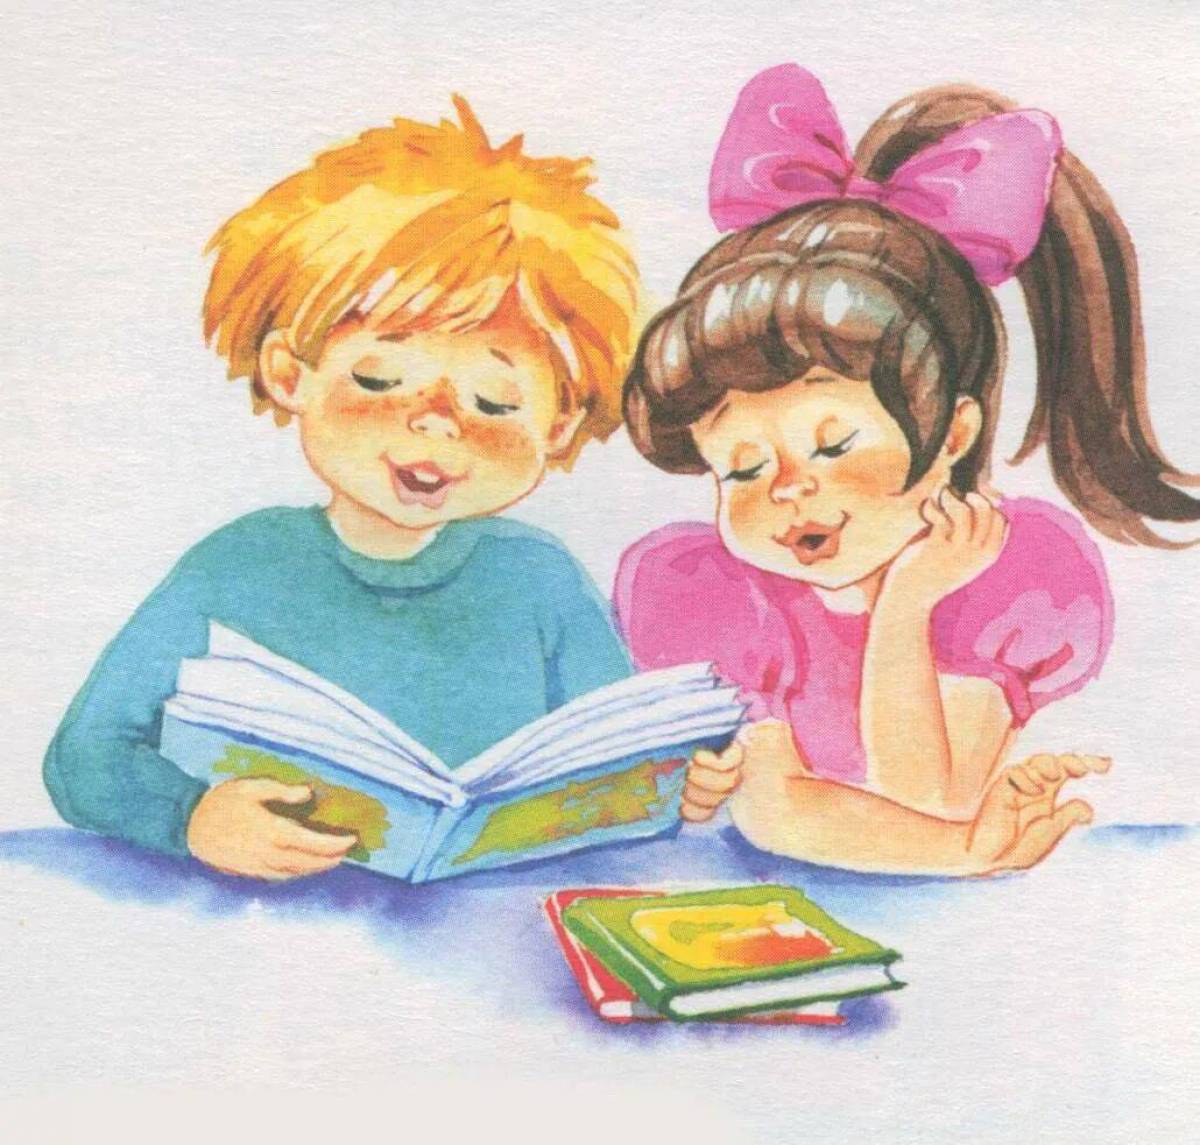 Картинка дети читают. Дети читают иллюстрация. Книга картинка для детей. Мальчик и девочка читают. Детская книга для детей.